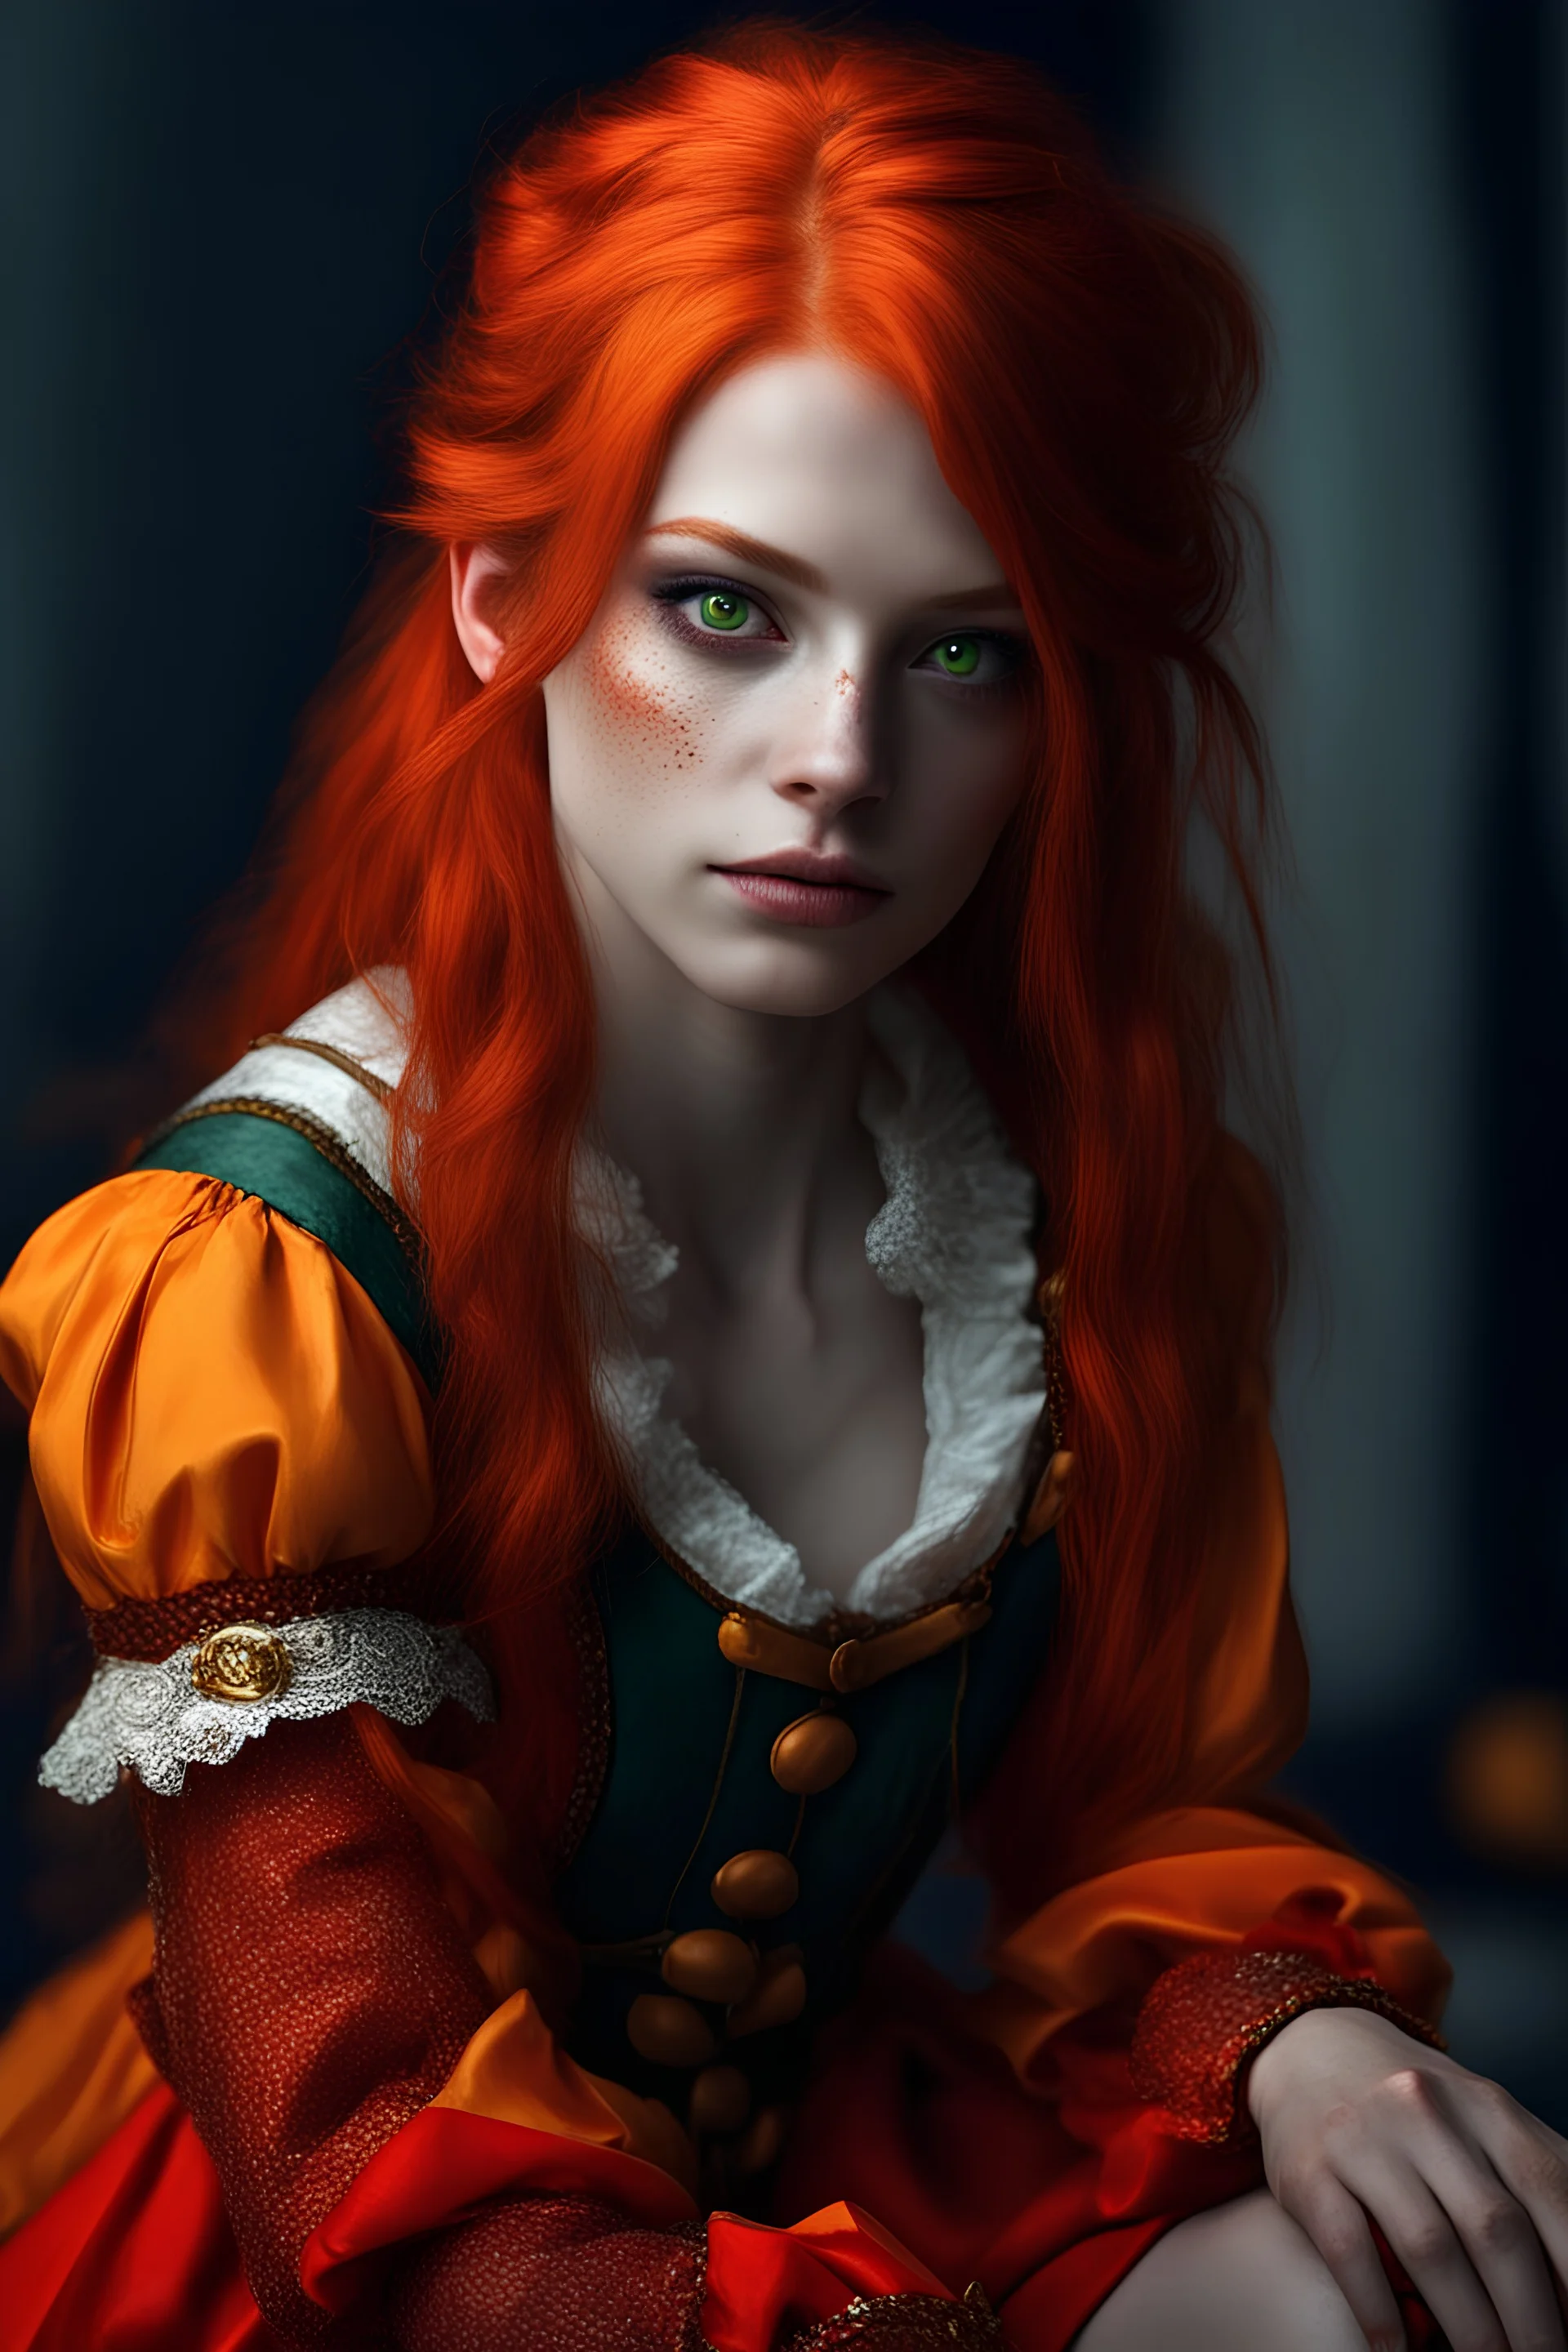 Human, 19yo girl, redhair, medieval, fantasy, jestet suit, green eyes, crazy smile, scar right eye